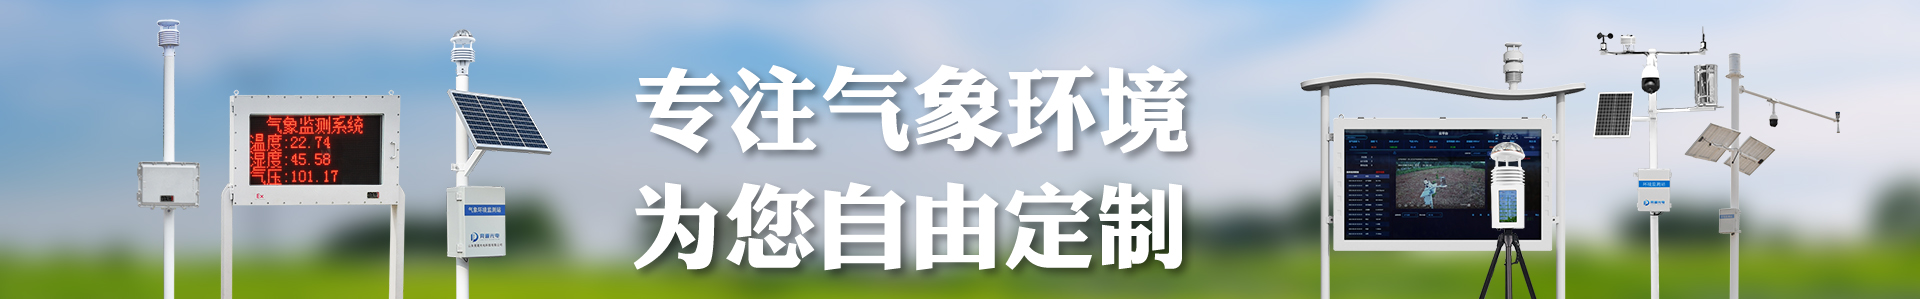 小麦赤霉病监测仪-小麦病虫害-自动气象站-小型气象站-防爆气象站-光伏气象站-完美体育·(中国)官方网站-365WM SPORTS